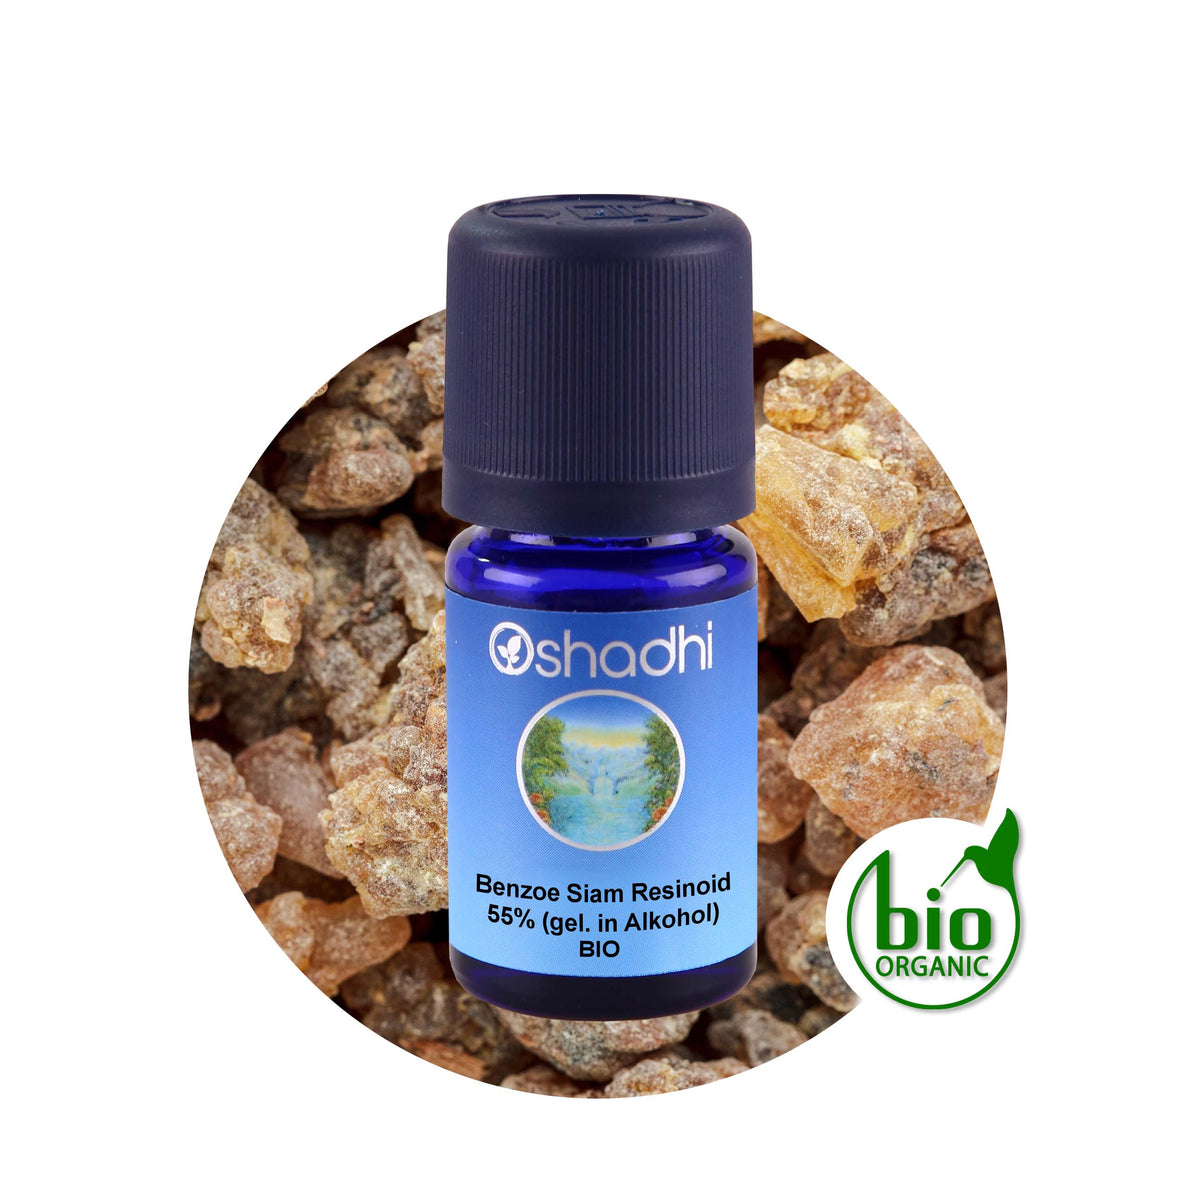 Benzoe Absolue ätherisches Öl: Aromatherapie für Ruhe und Wohlbefinden